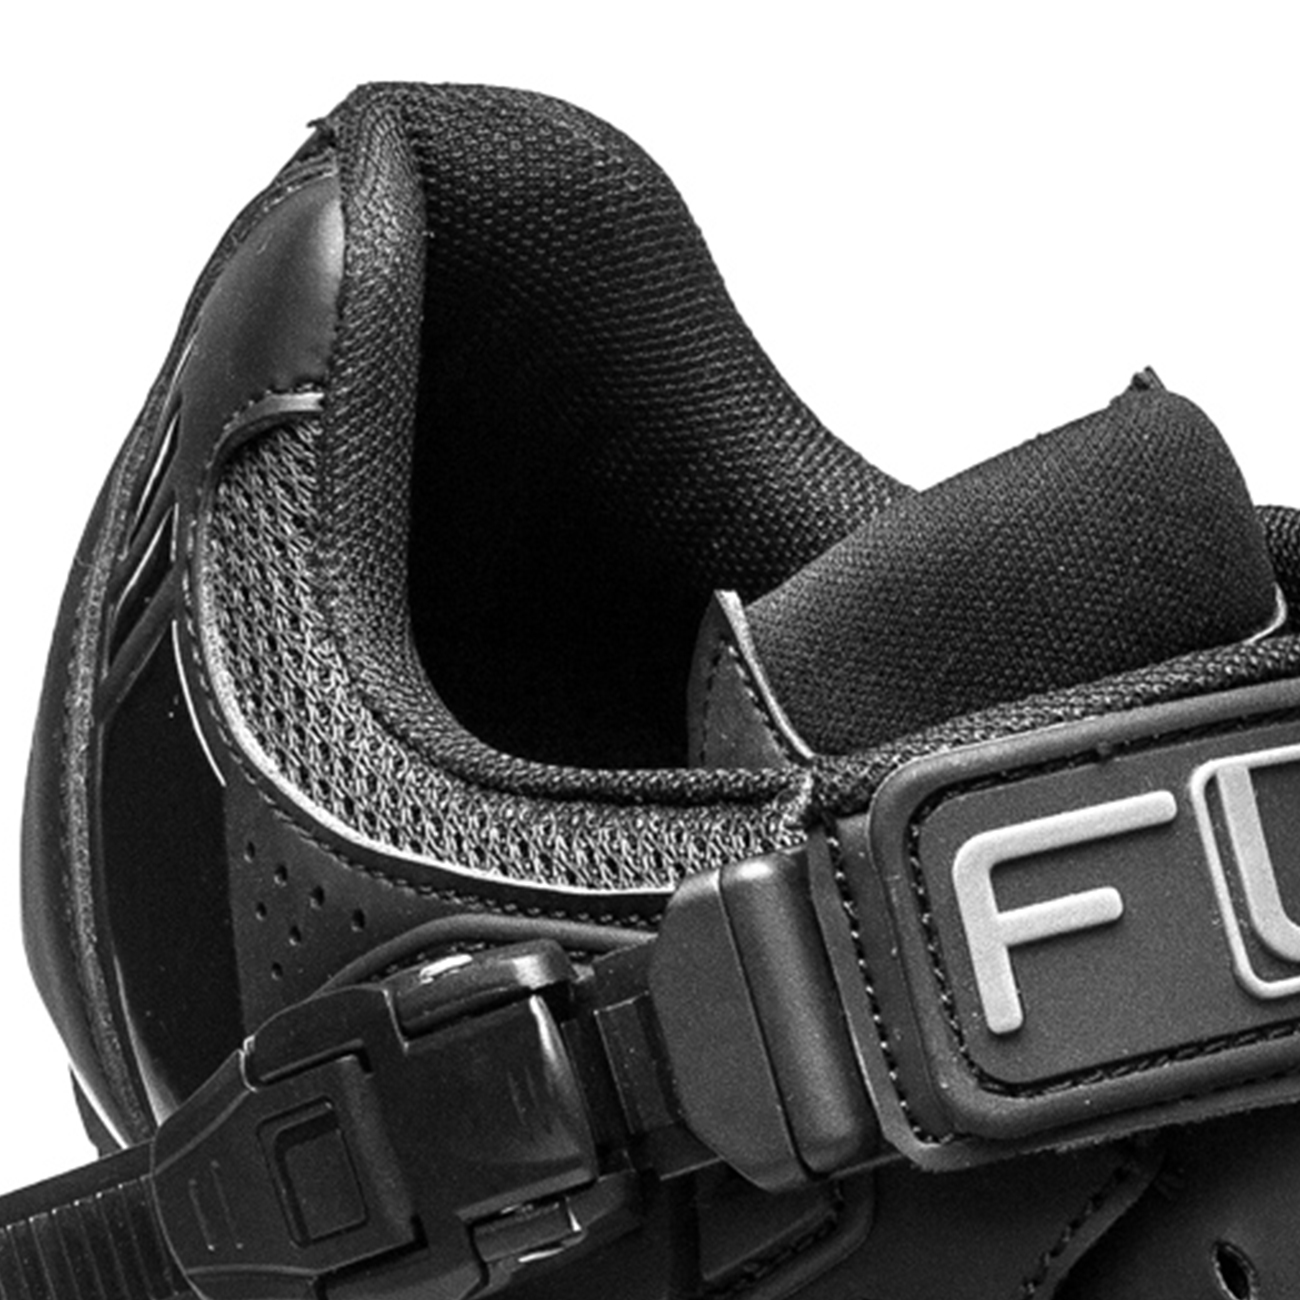 FLR Kerékpáros Cipő - F15 - Fekete